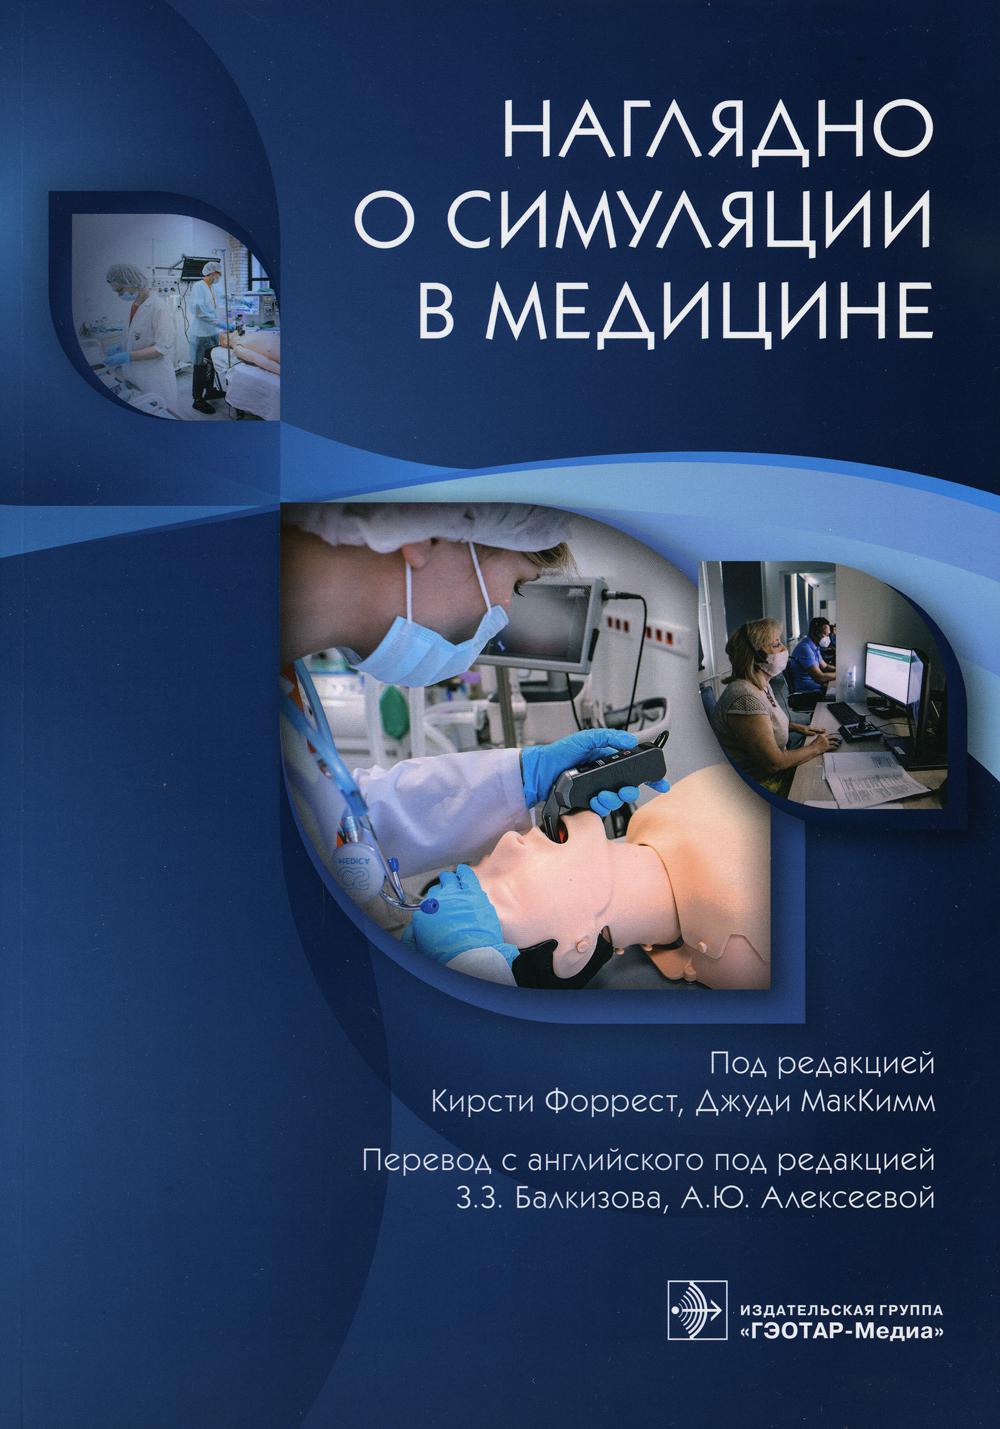 фото Книга наглядно о симуляции в медицине гэотар-медиа